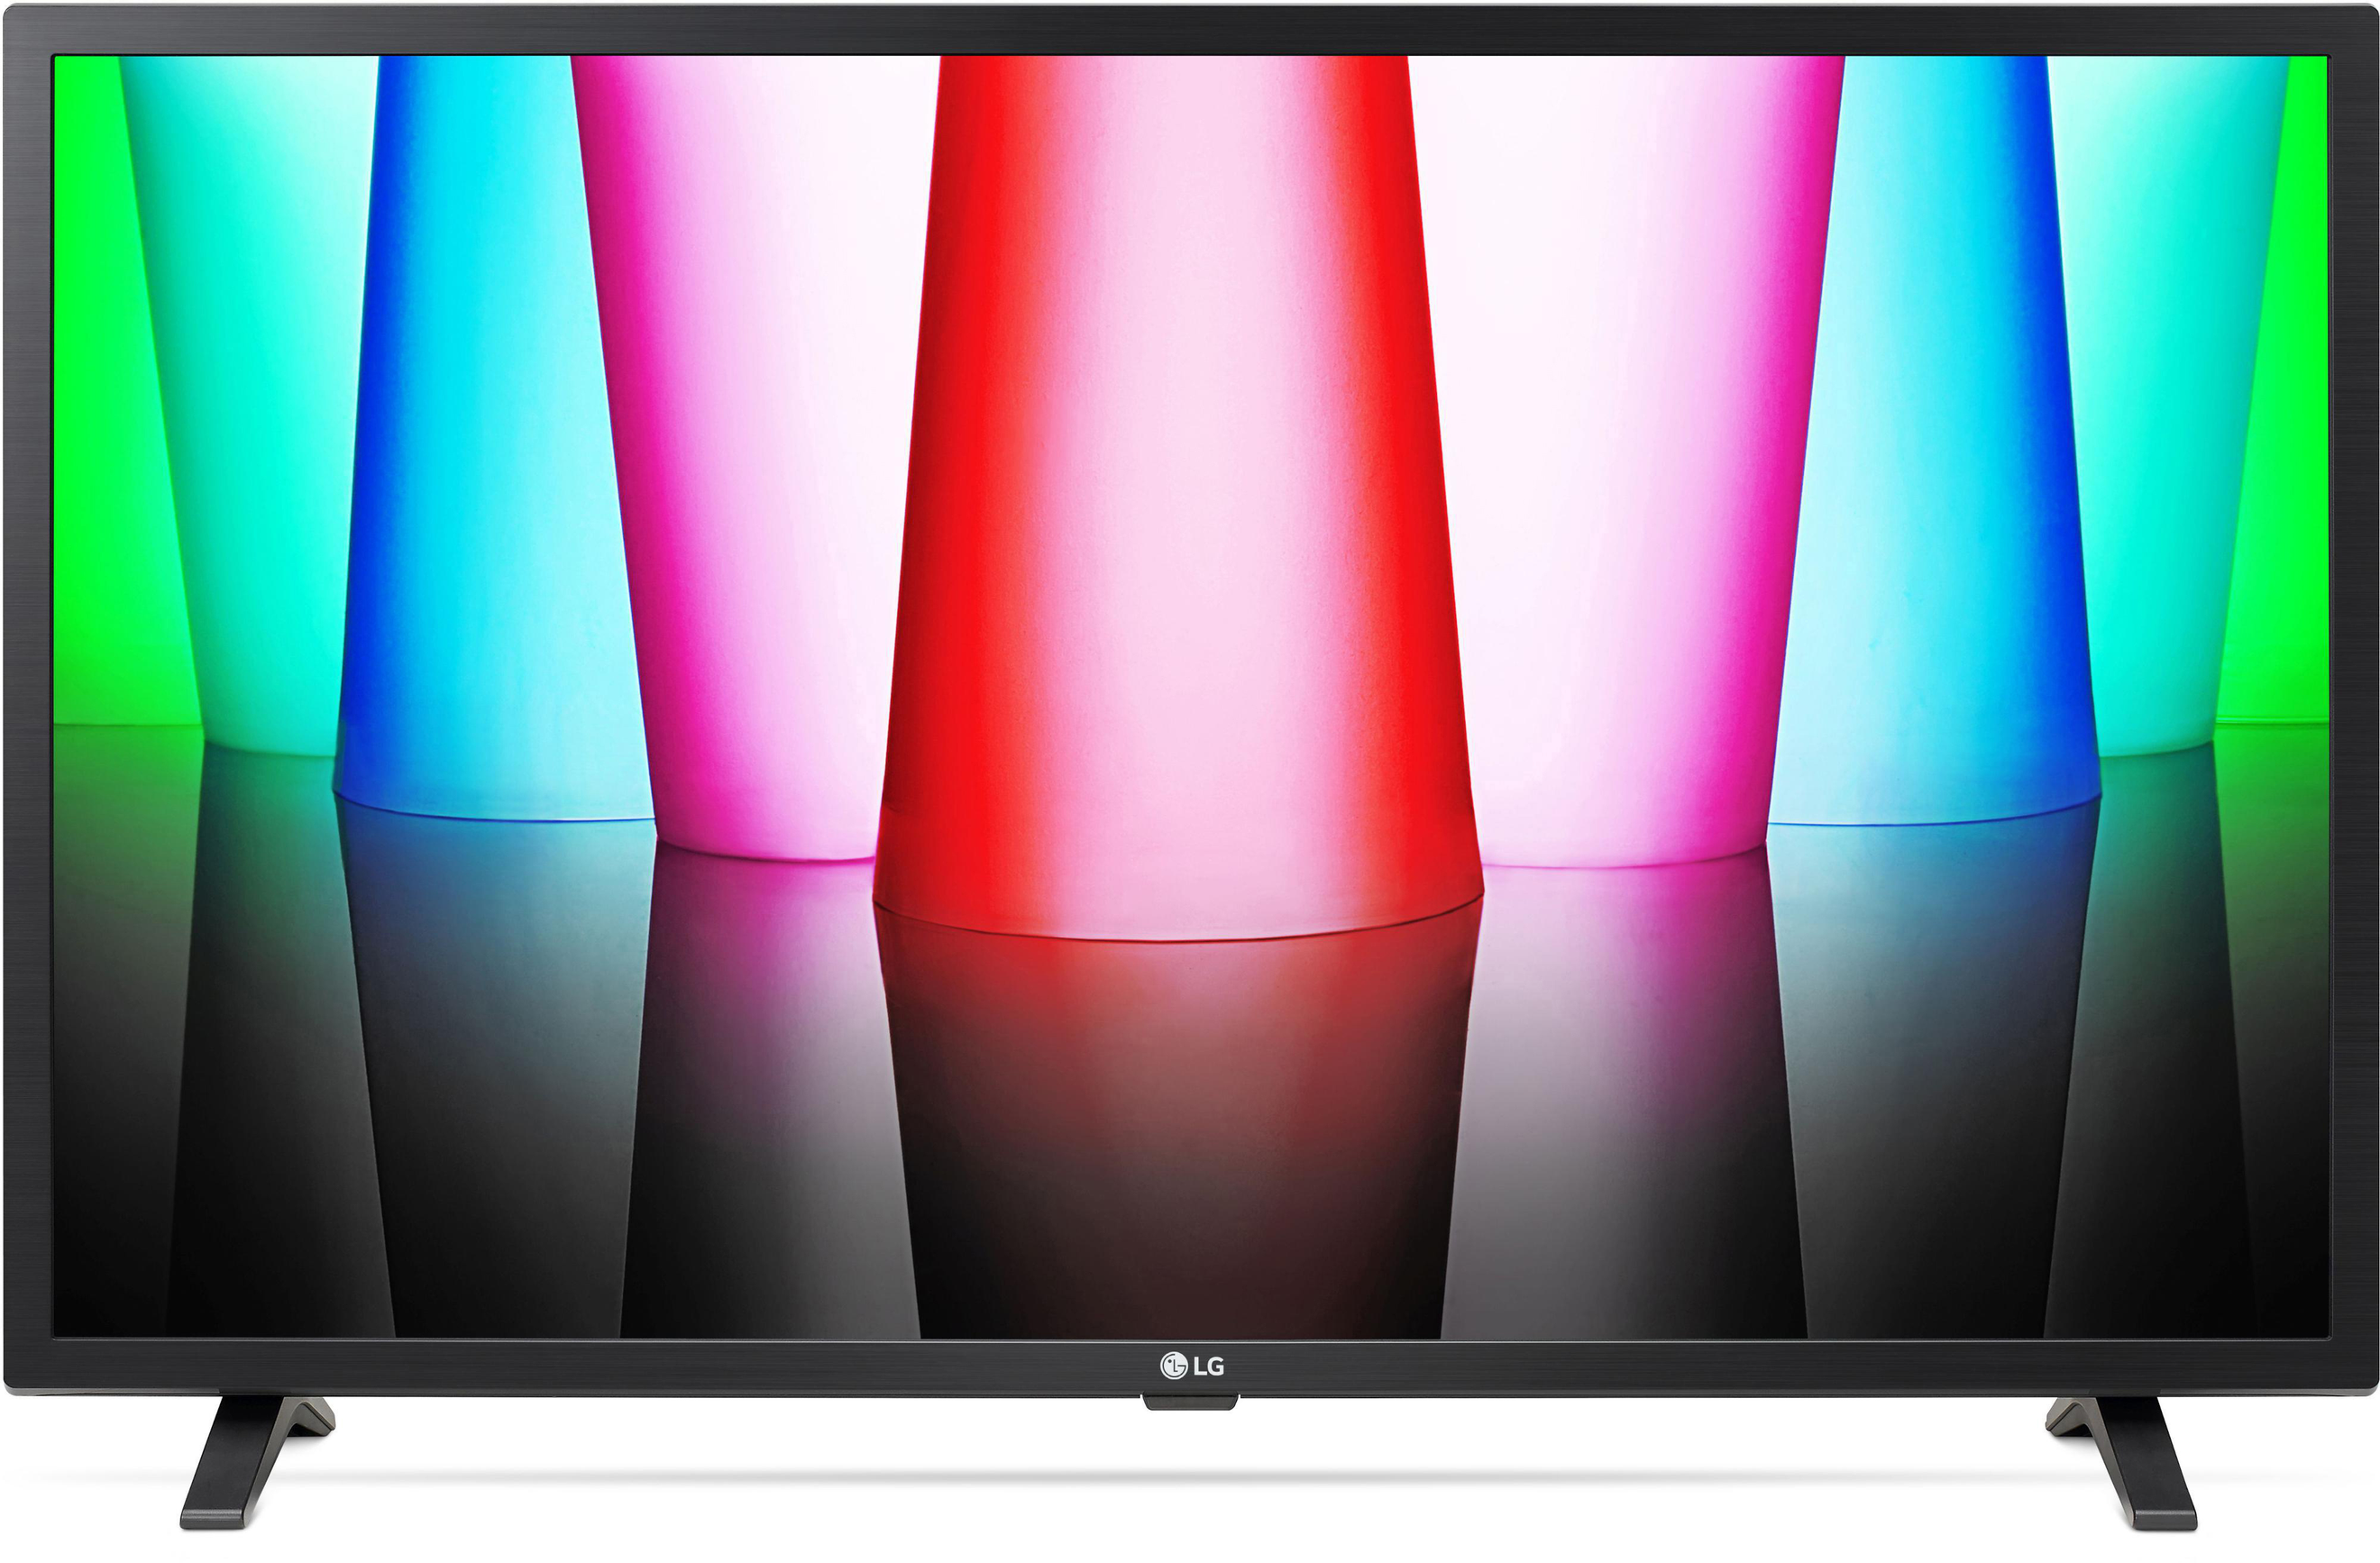 LG 32LQ63006LA FHD TV (Flat, 32 Zoll / 80 cm, Full-HD, SMART TV, webOS 22 mit LG ThinQ) für 269,99€ in Saturn